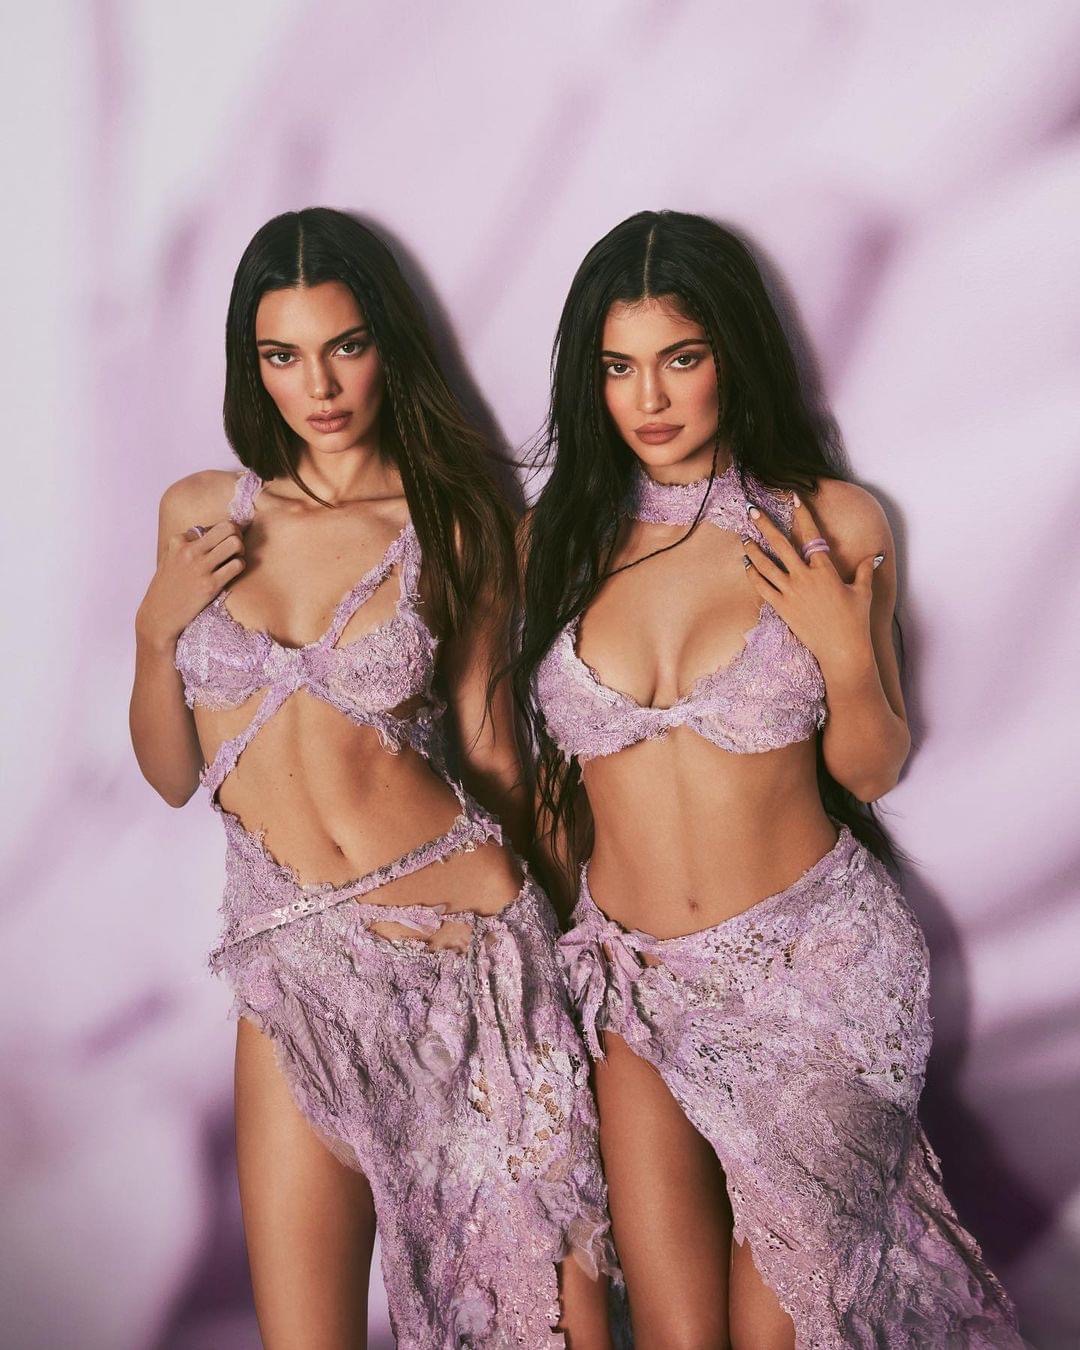 Đây là thiết kế được đặt riêng cho 2 chị em nhà Jenner cho bộ ảnh quảng bá BST mỹ phẩm mới.